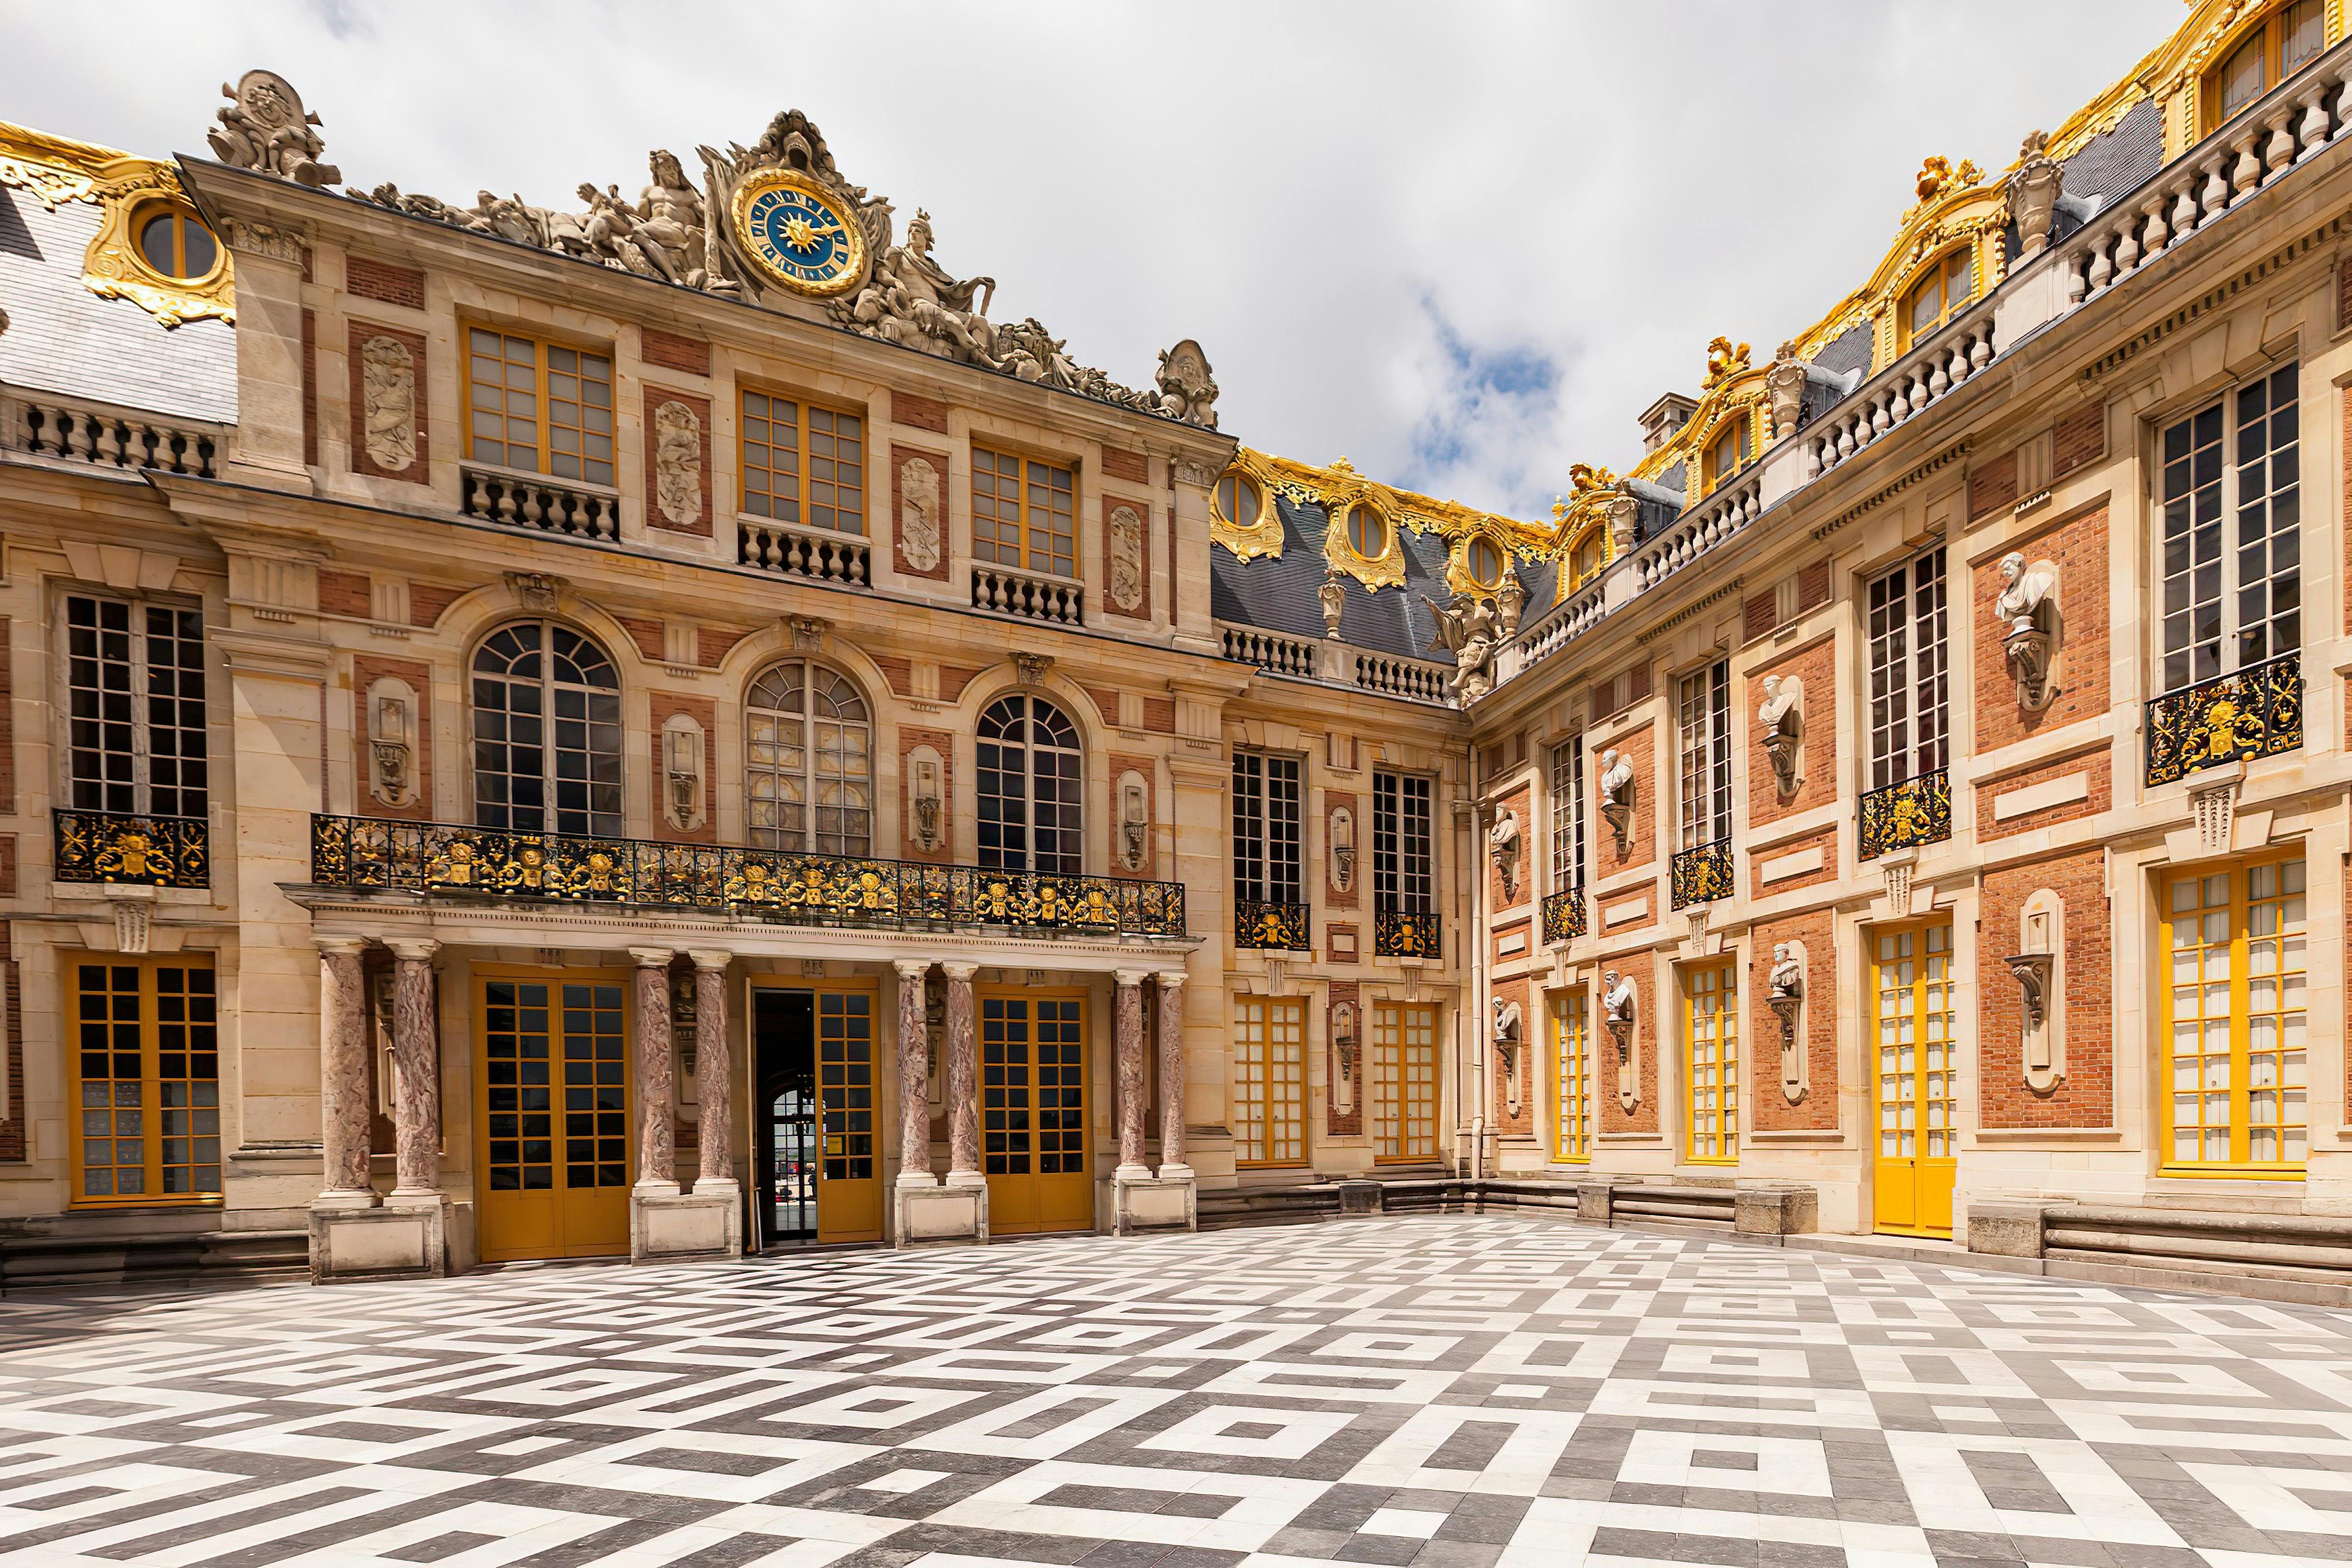 Rondleiding Versailles en de Trianon met lunch inclusief vervoer vanuit Parijs